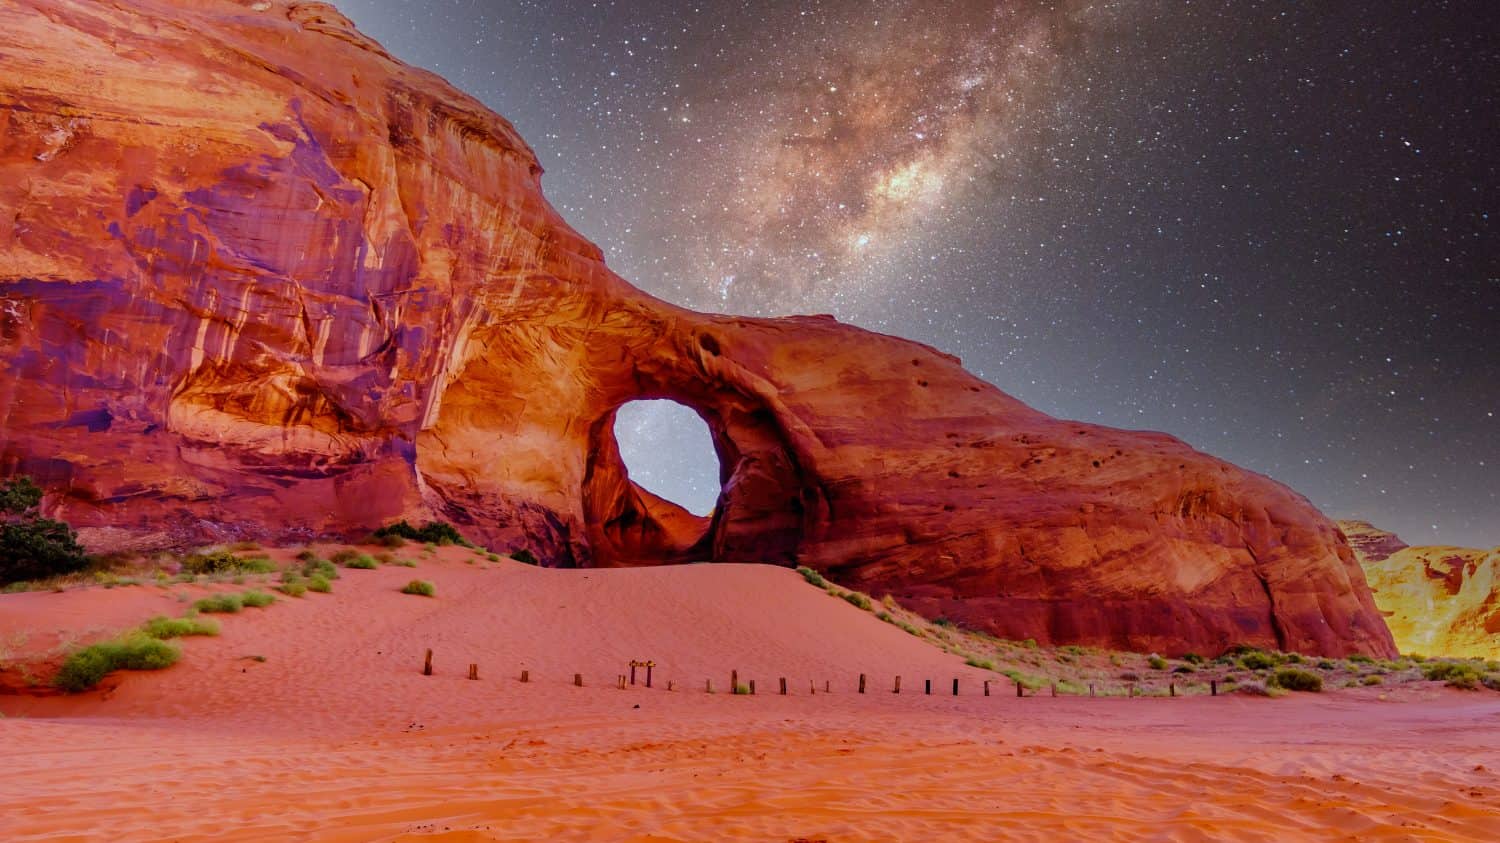 Cielo stellato dietro l'orecchio del vento, un buco in una formazione rocciosa nel parco tribale Navajo Monument Valley al confine tra Utah e Arizona, Stati Uniti